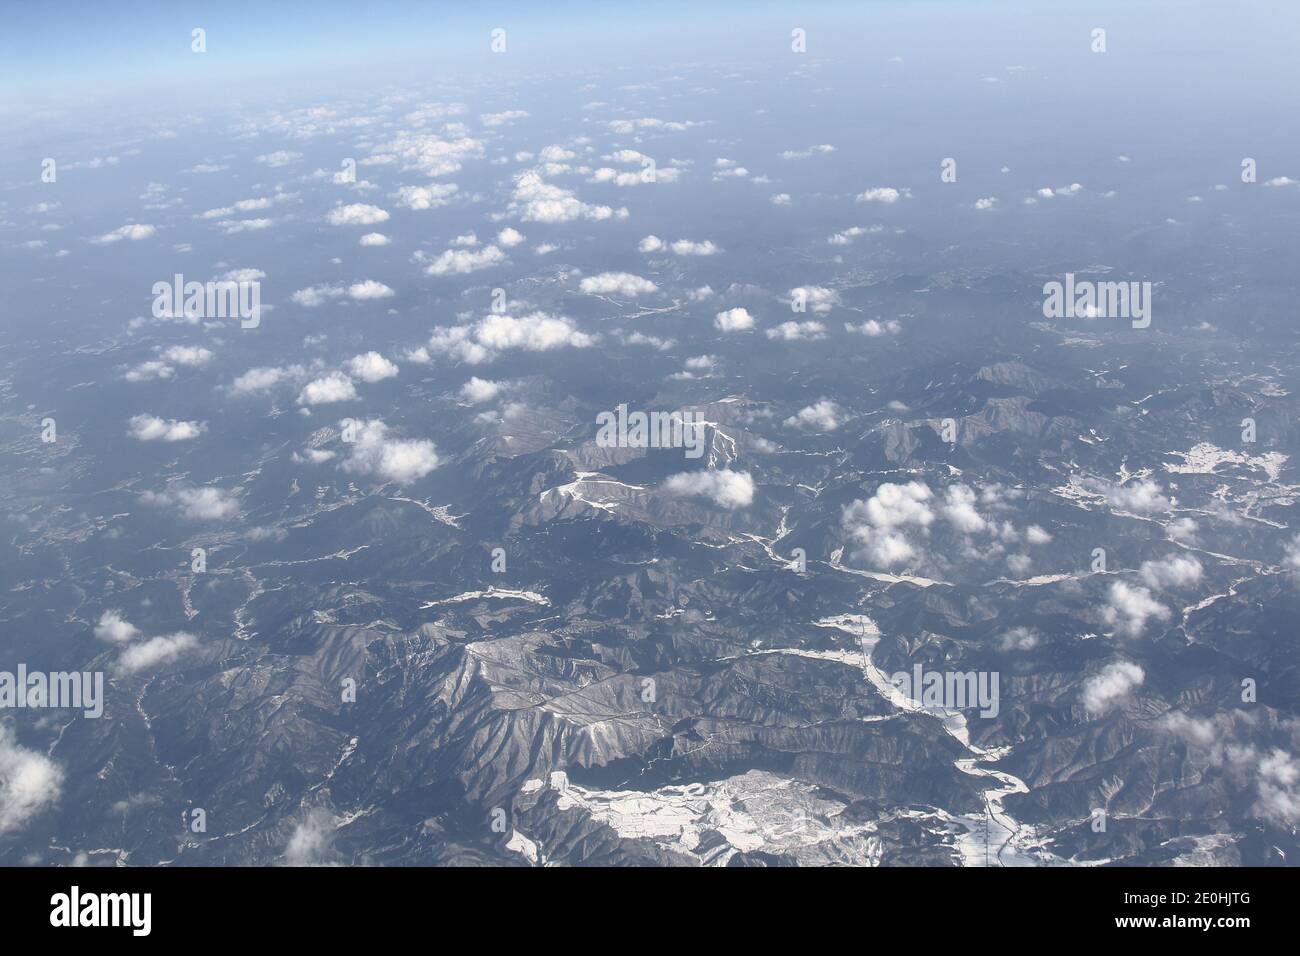 il meraviglioso paesaggio invernale dalle finestre di un aereo Foto Stock